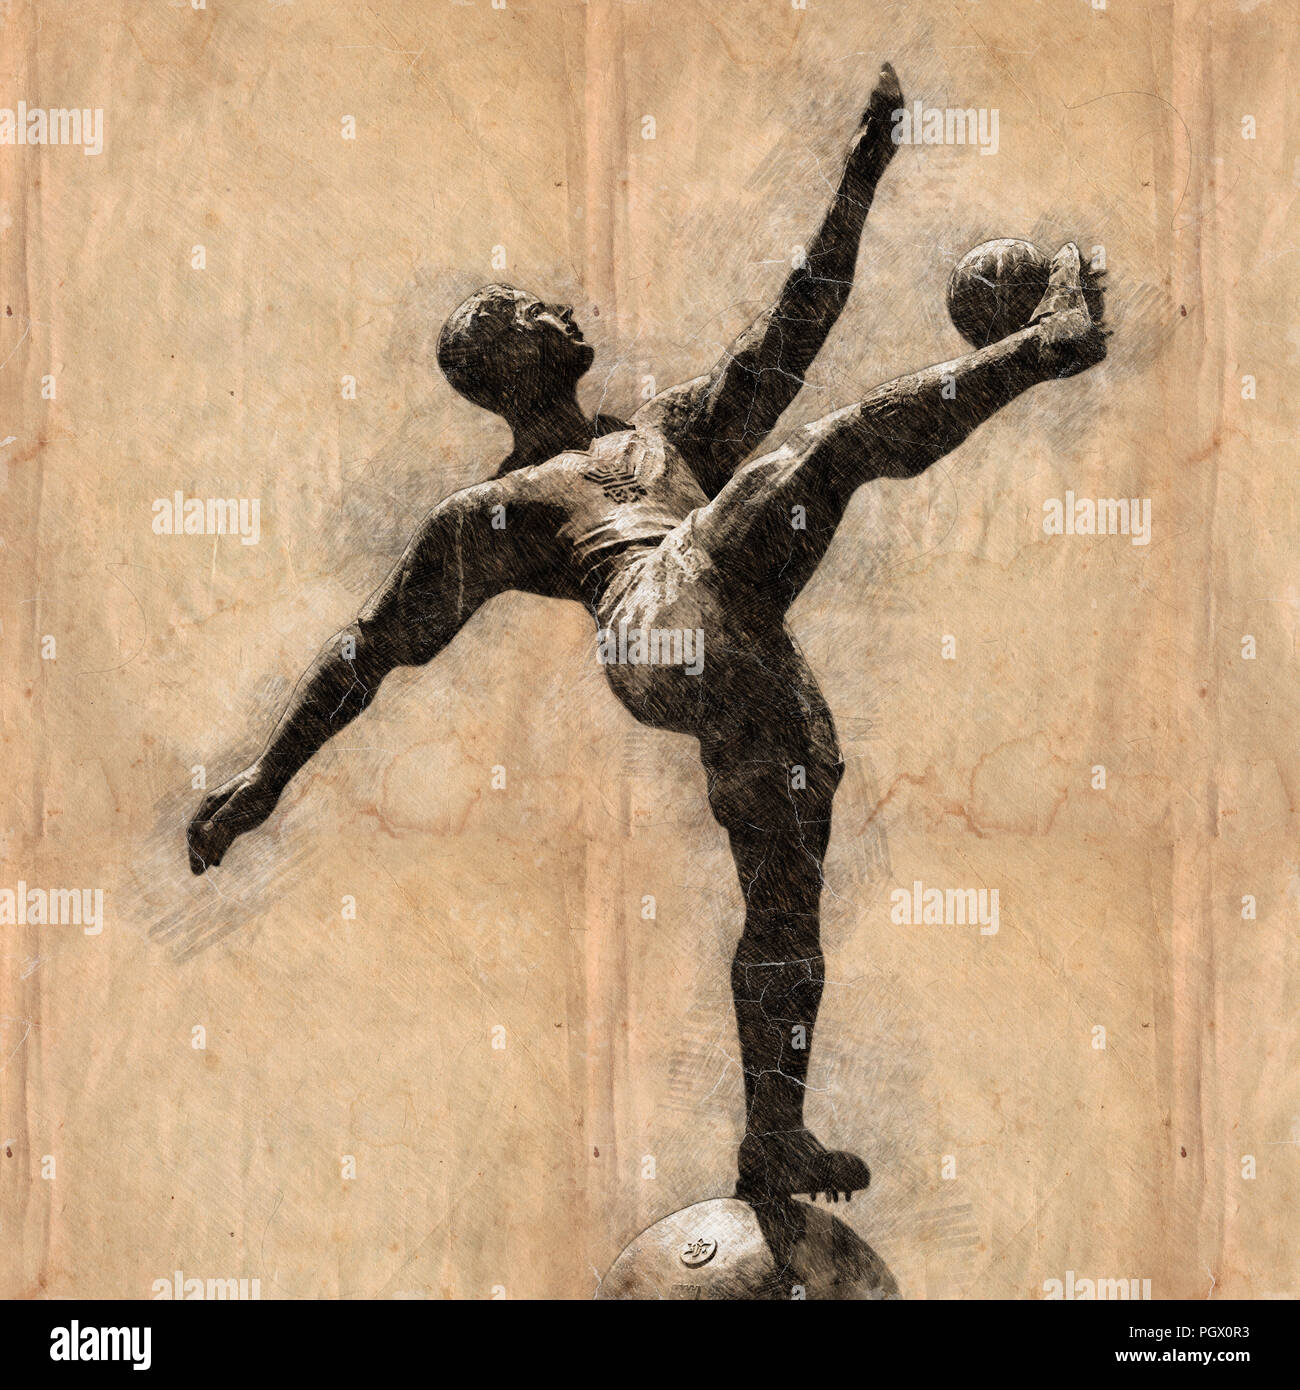 Digital verbesserte Bild einer Statue eines Fußball-Spieler in Aktion Stockfoto